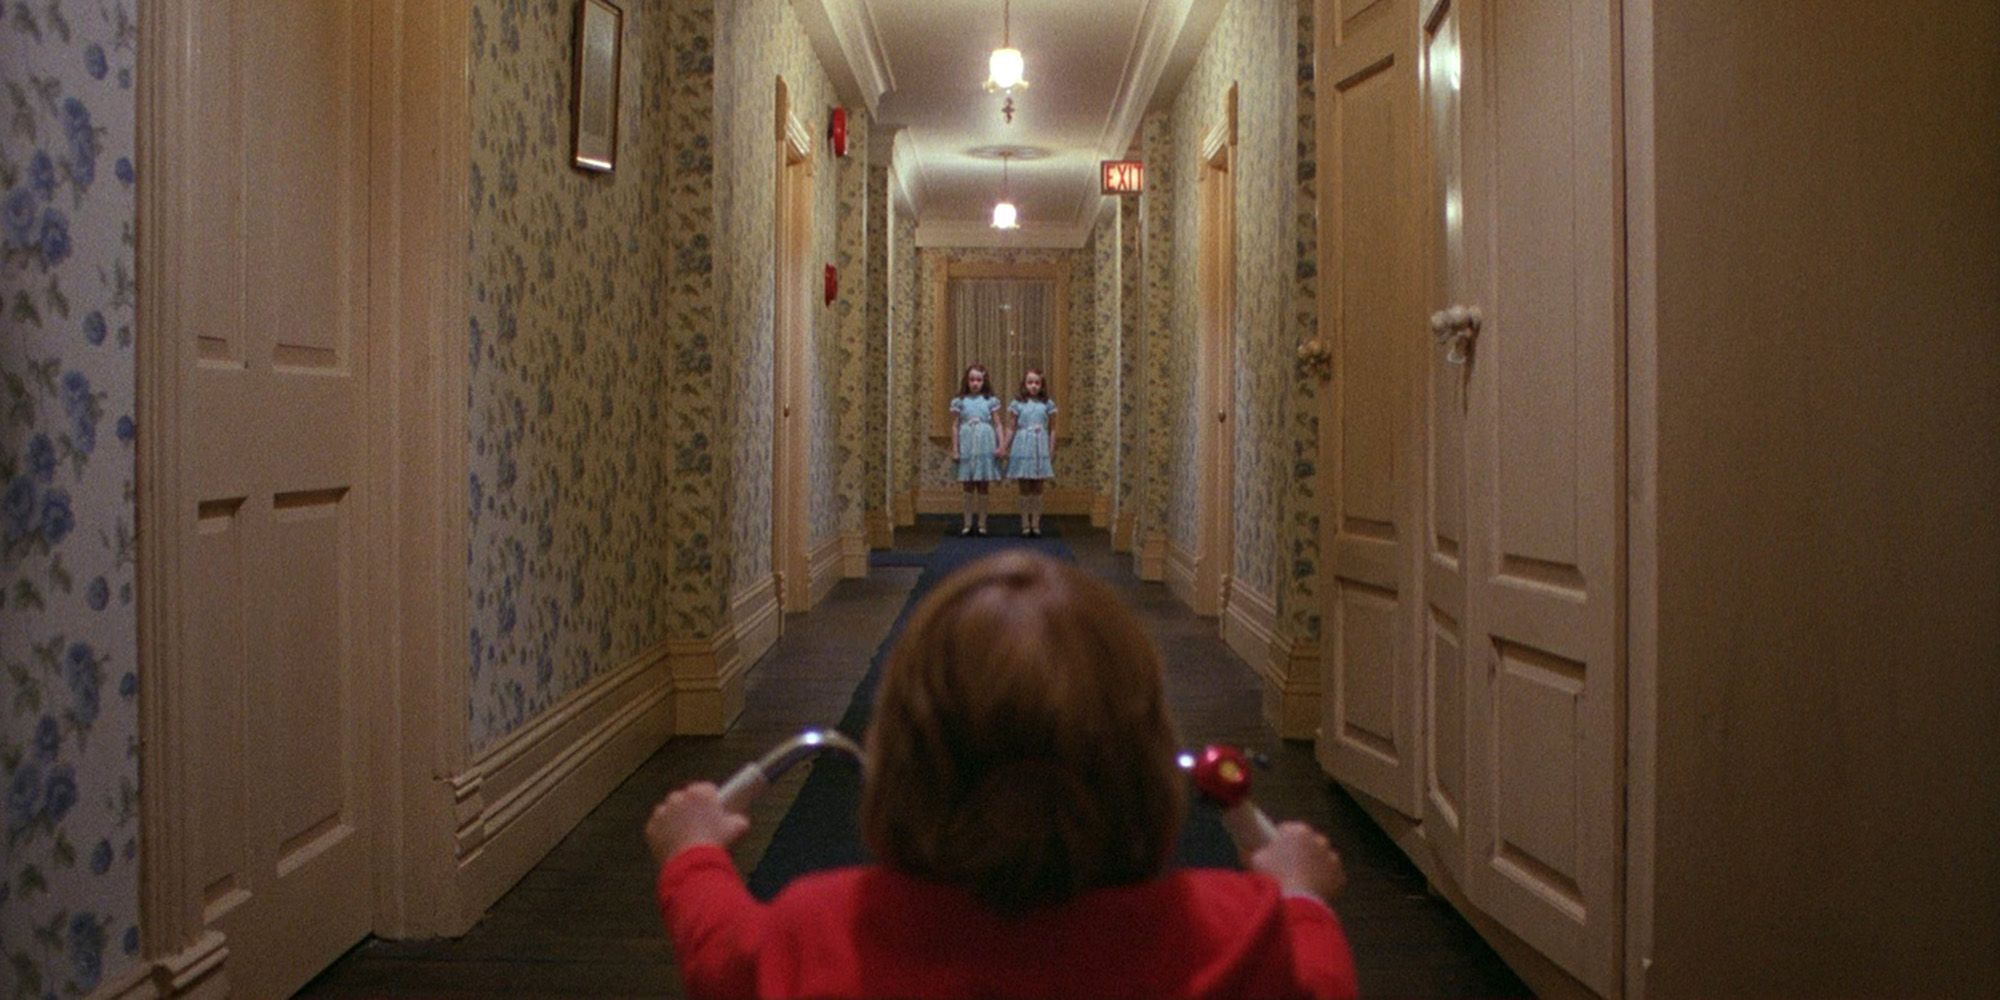 Danny regarde les jumeaux dans un hall de l'hôtel Overlook de 'The Shining'